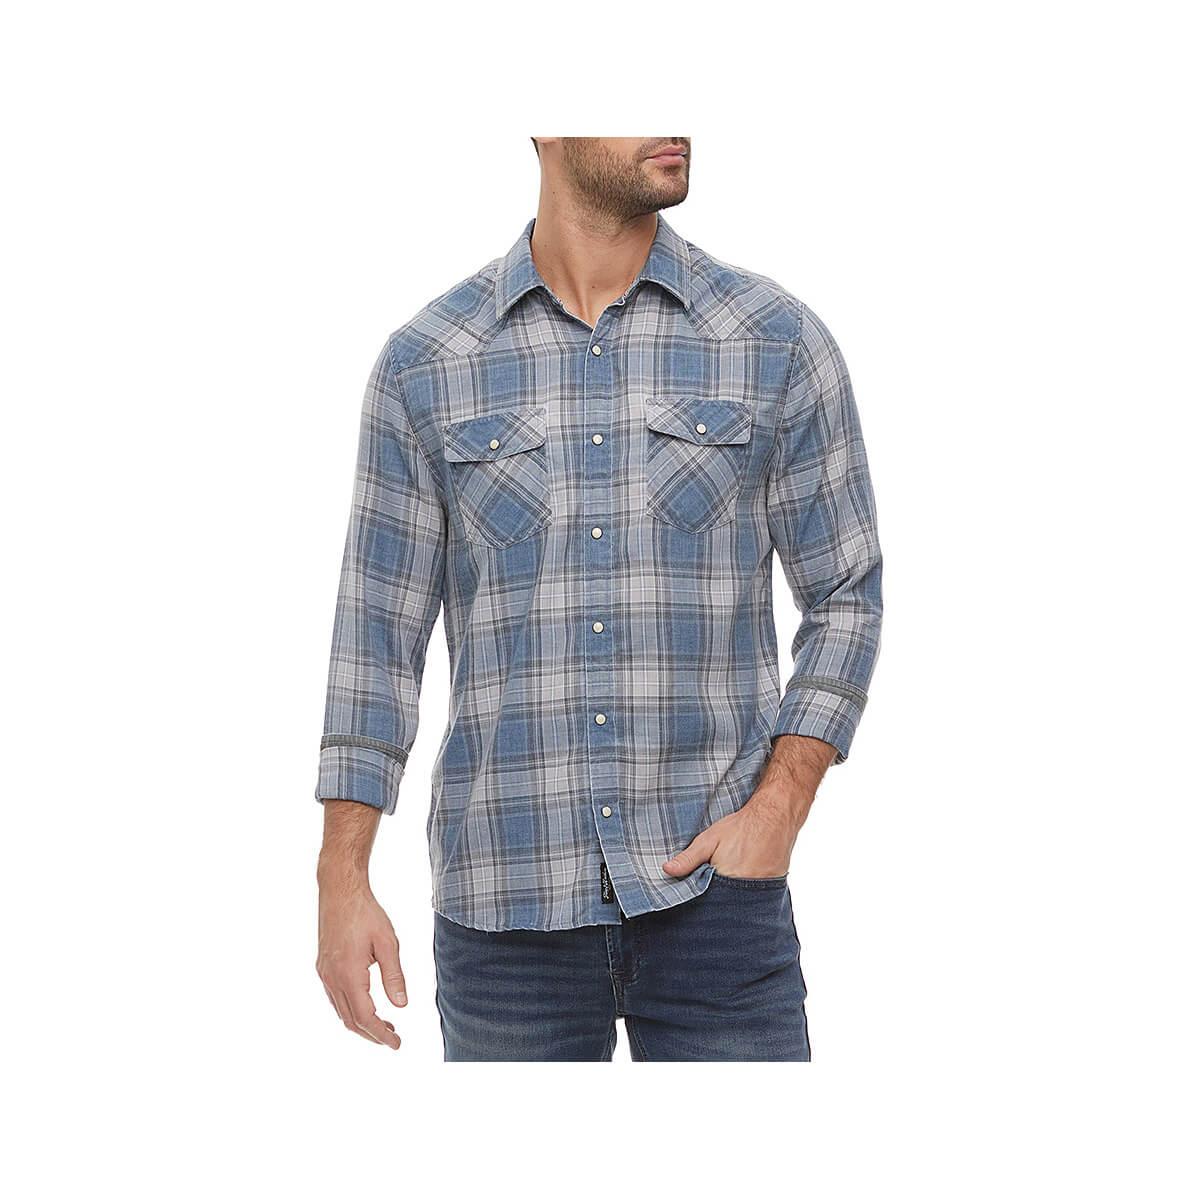  Men's Harker Vintage Soft Long Sleeve Shirt